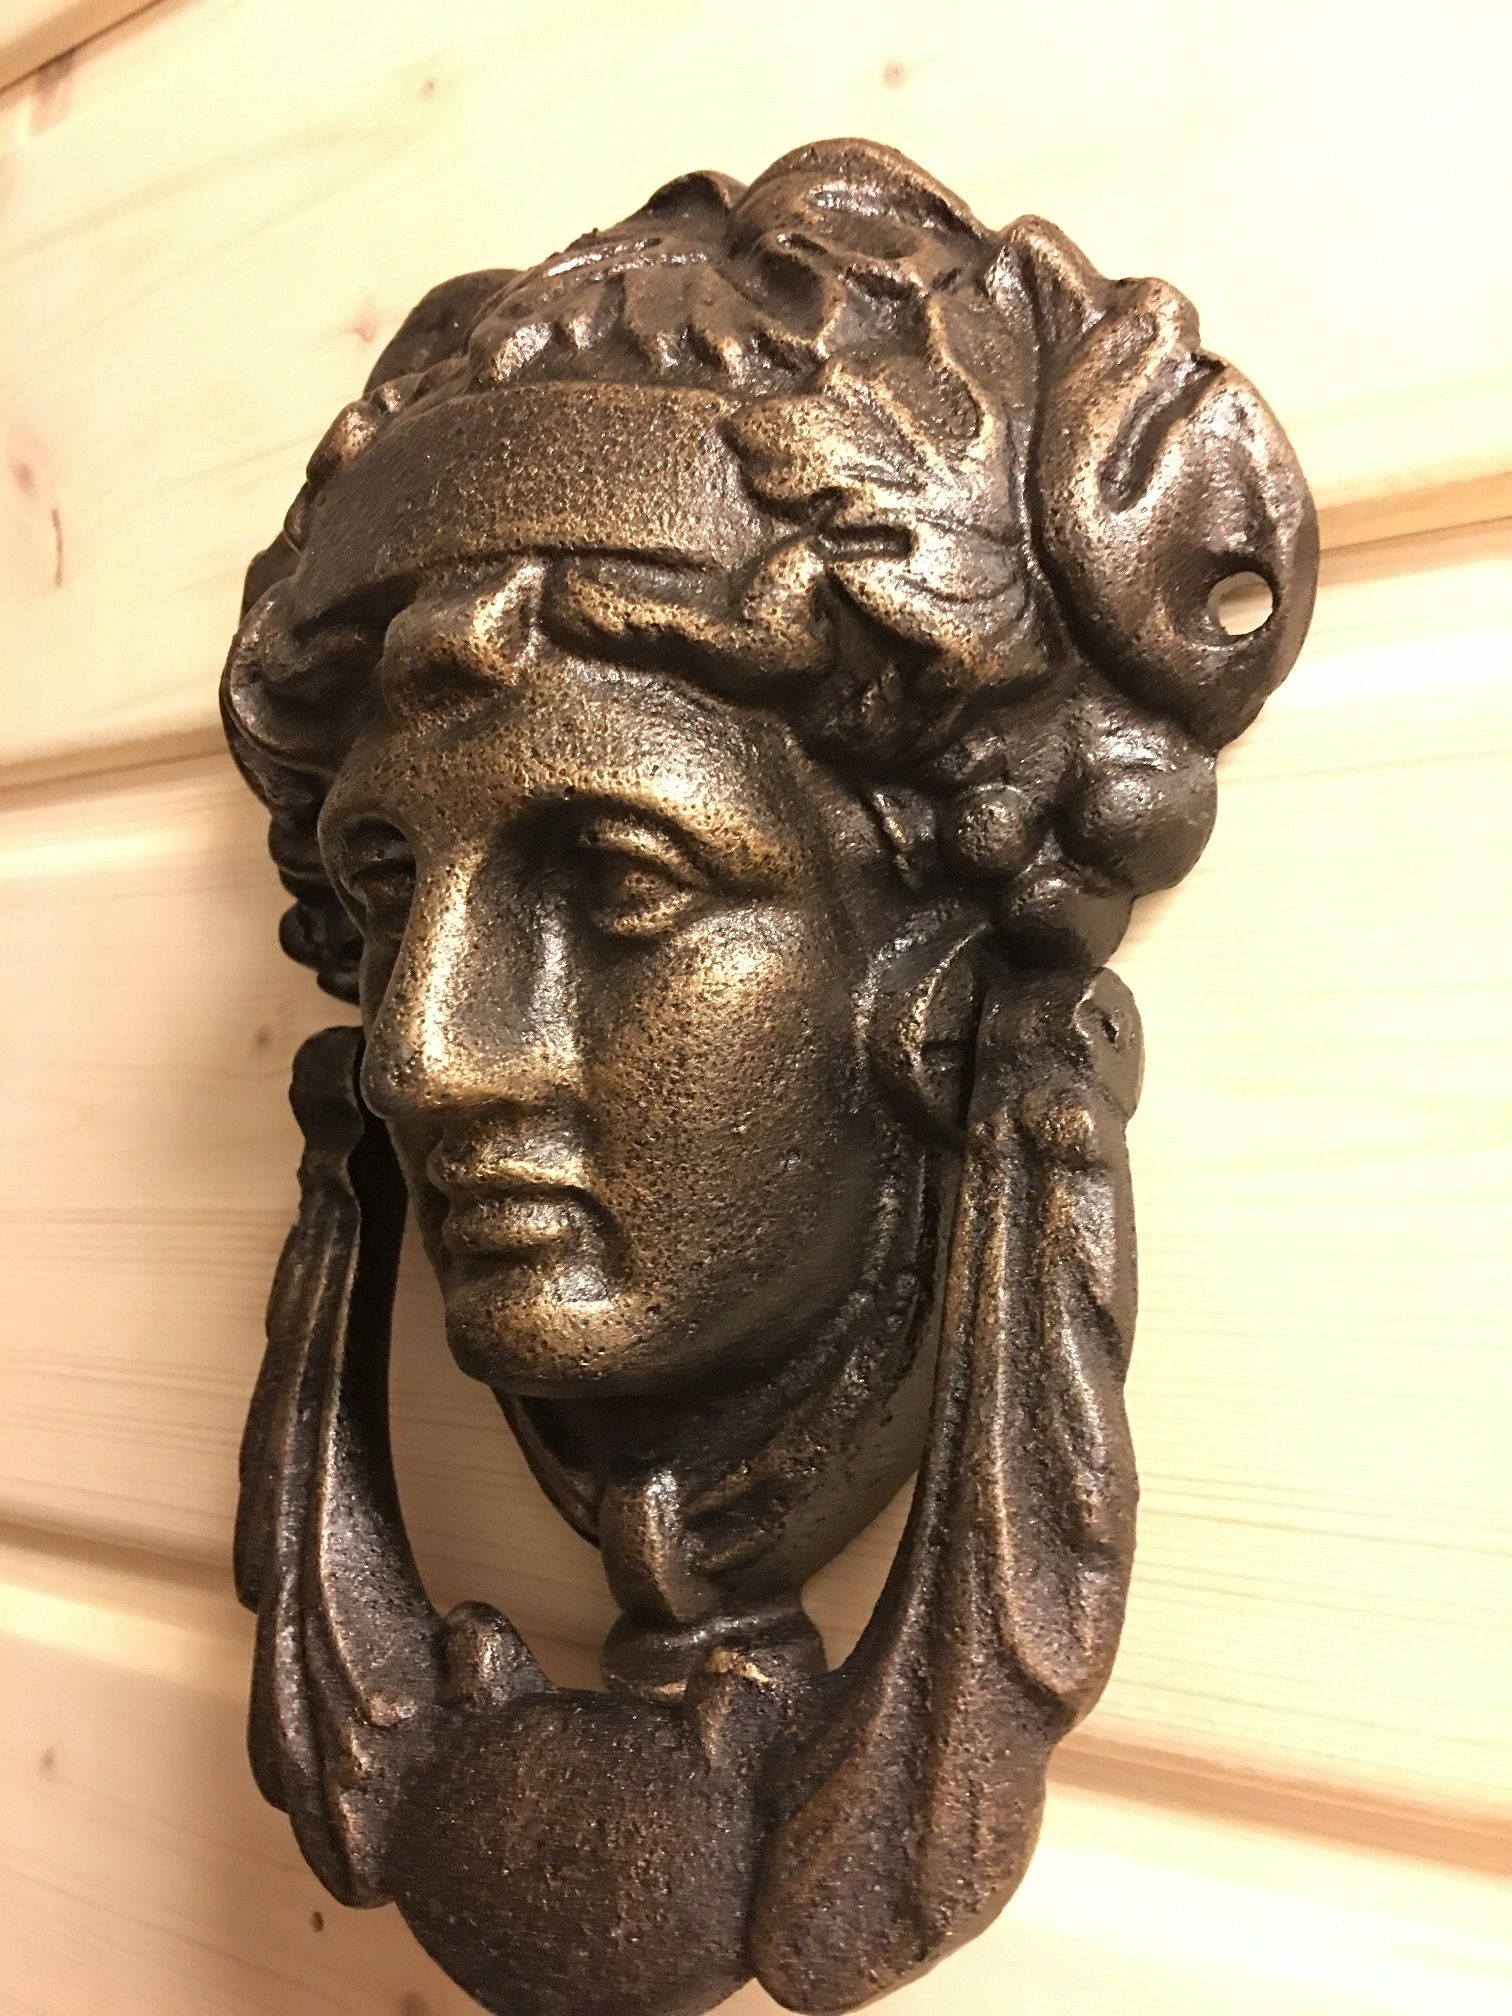 Klopper voor de voordeur, deurklopper Athena, gietijzer, bronskleur.